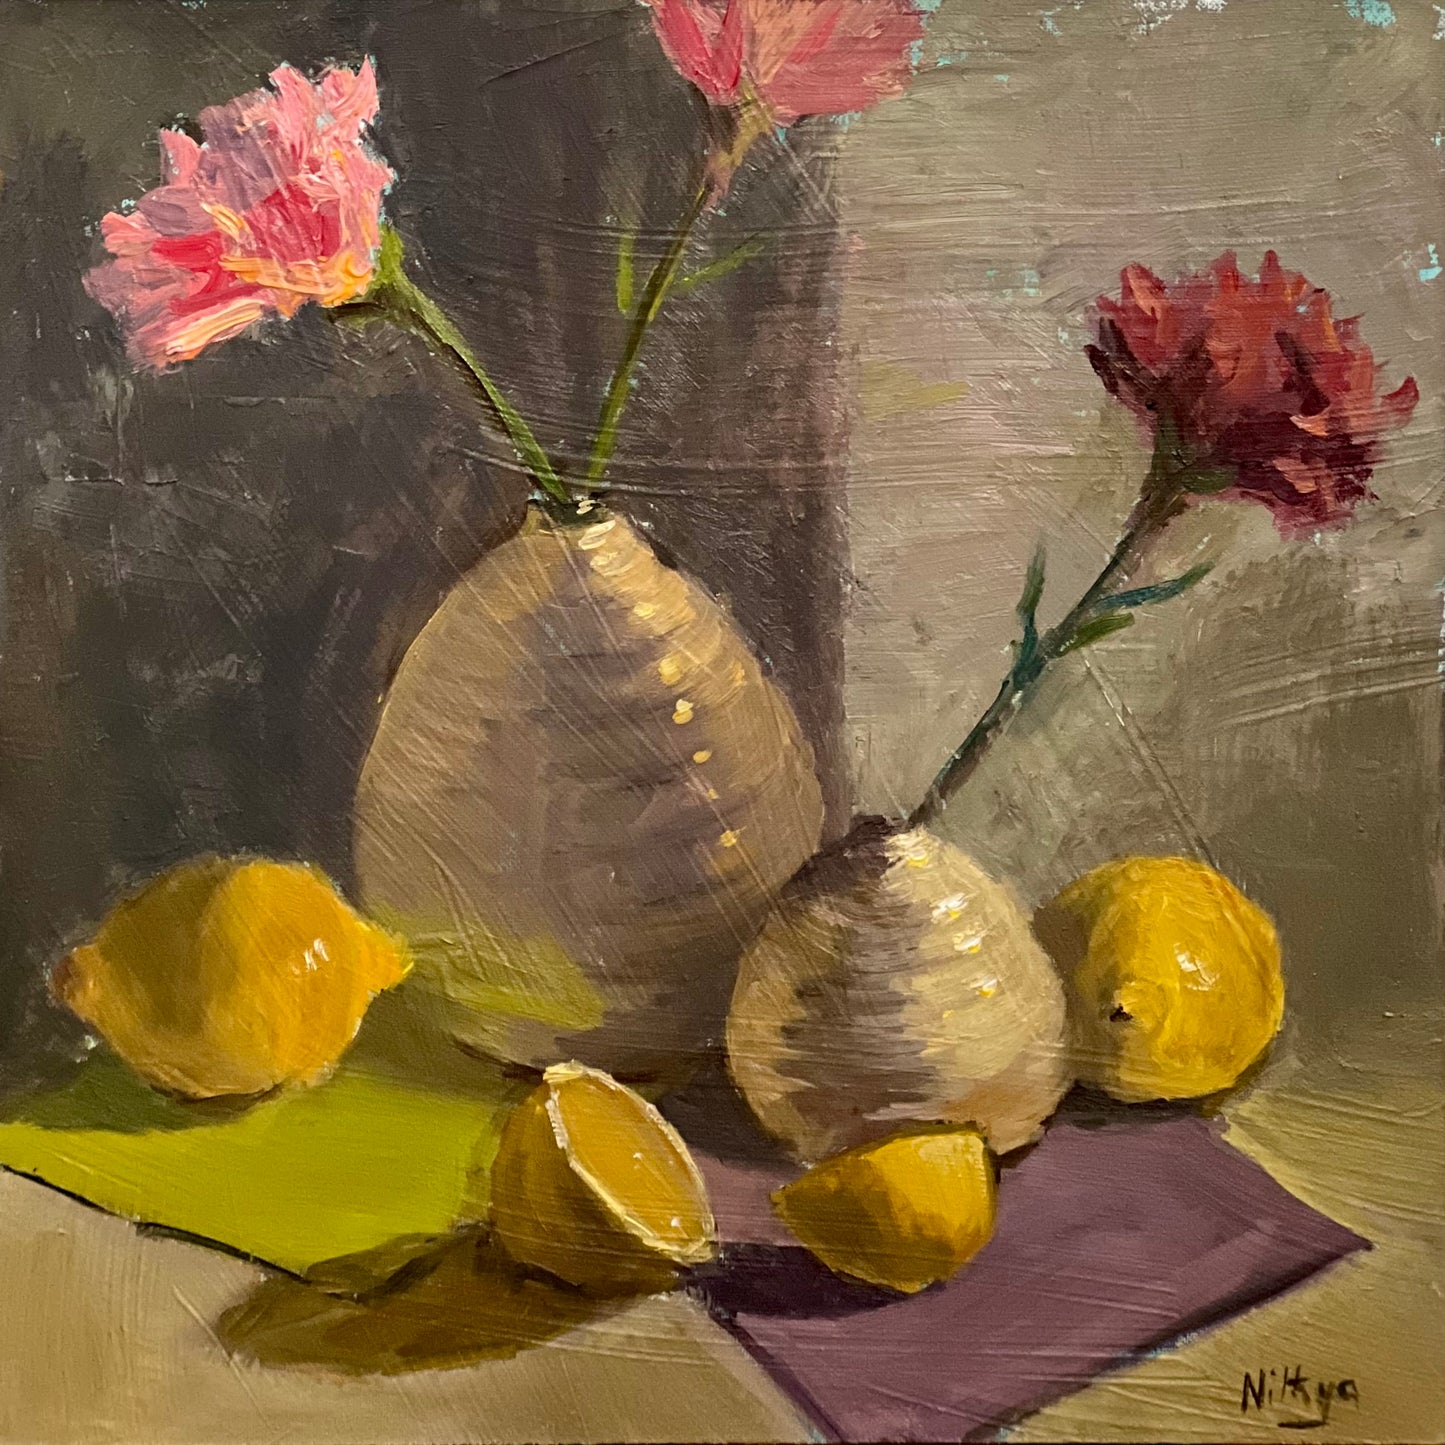 Two white vases and Lemons - Still Life Oil Painting